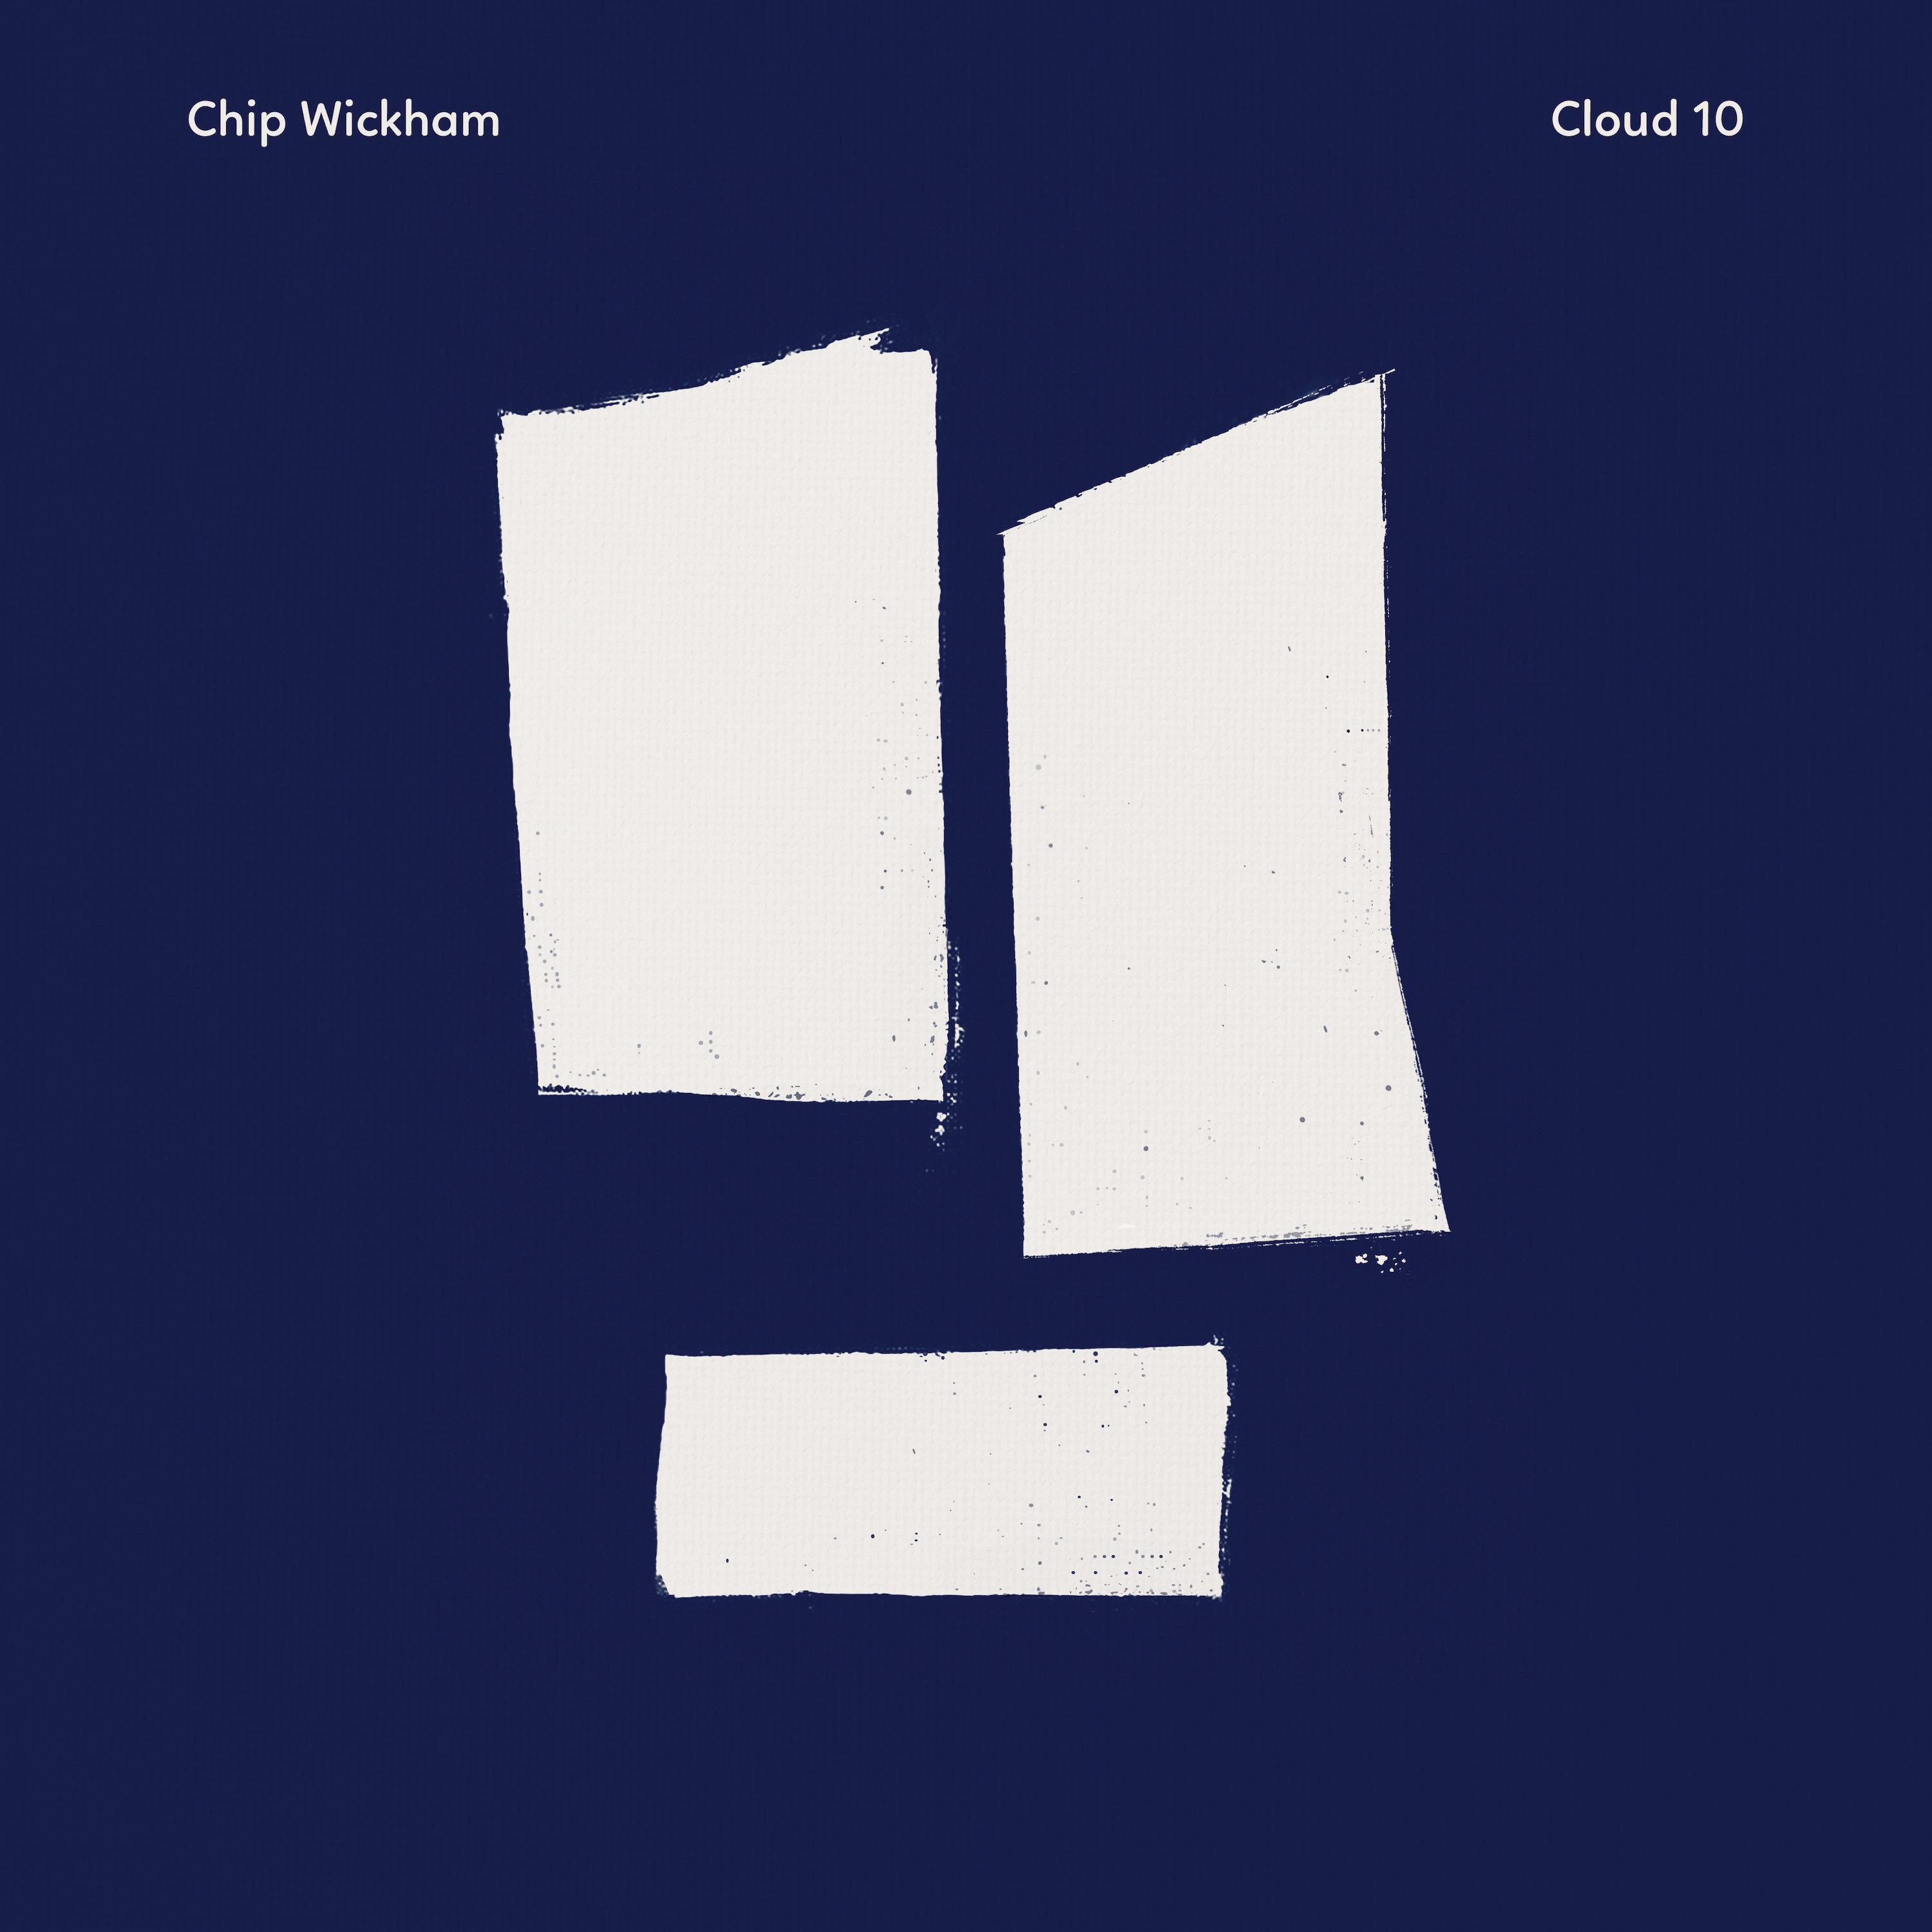 Chip Wickham - Before I Go